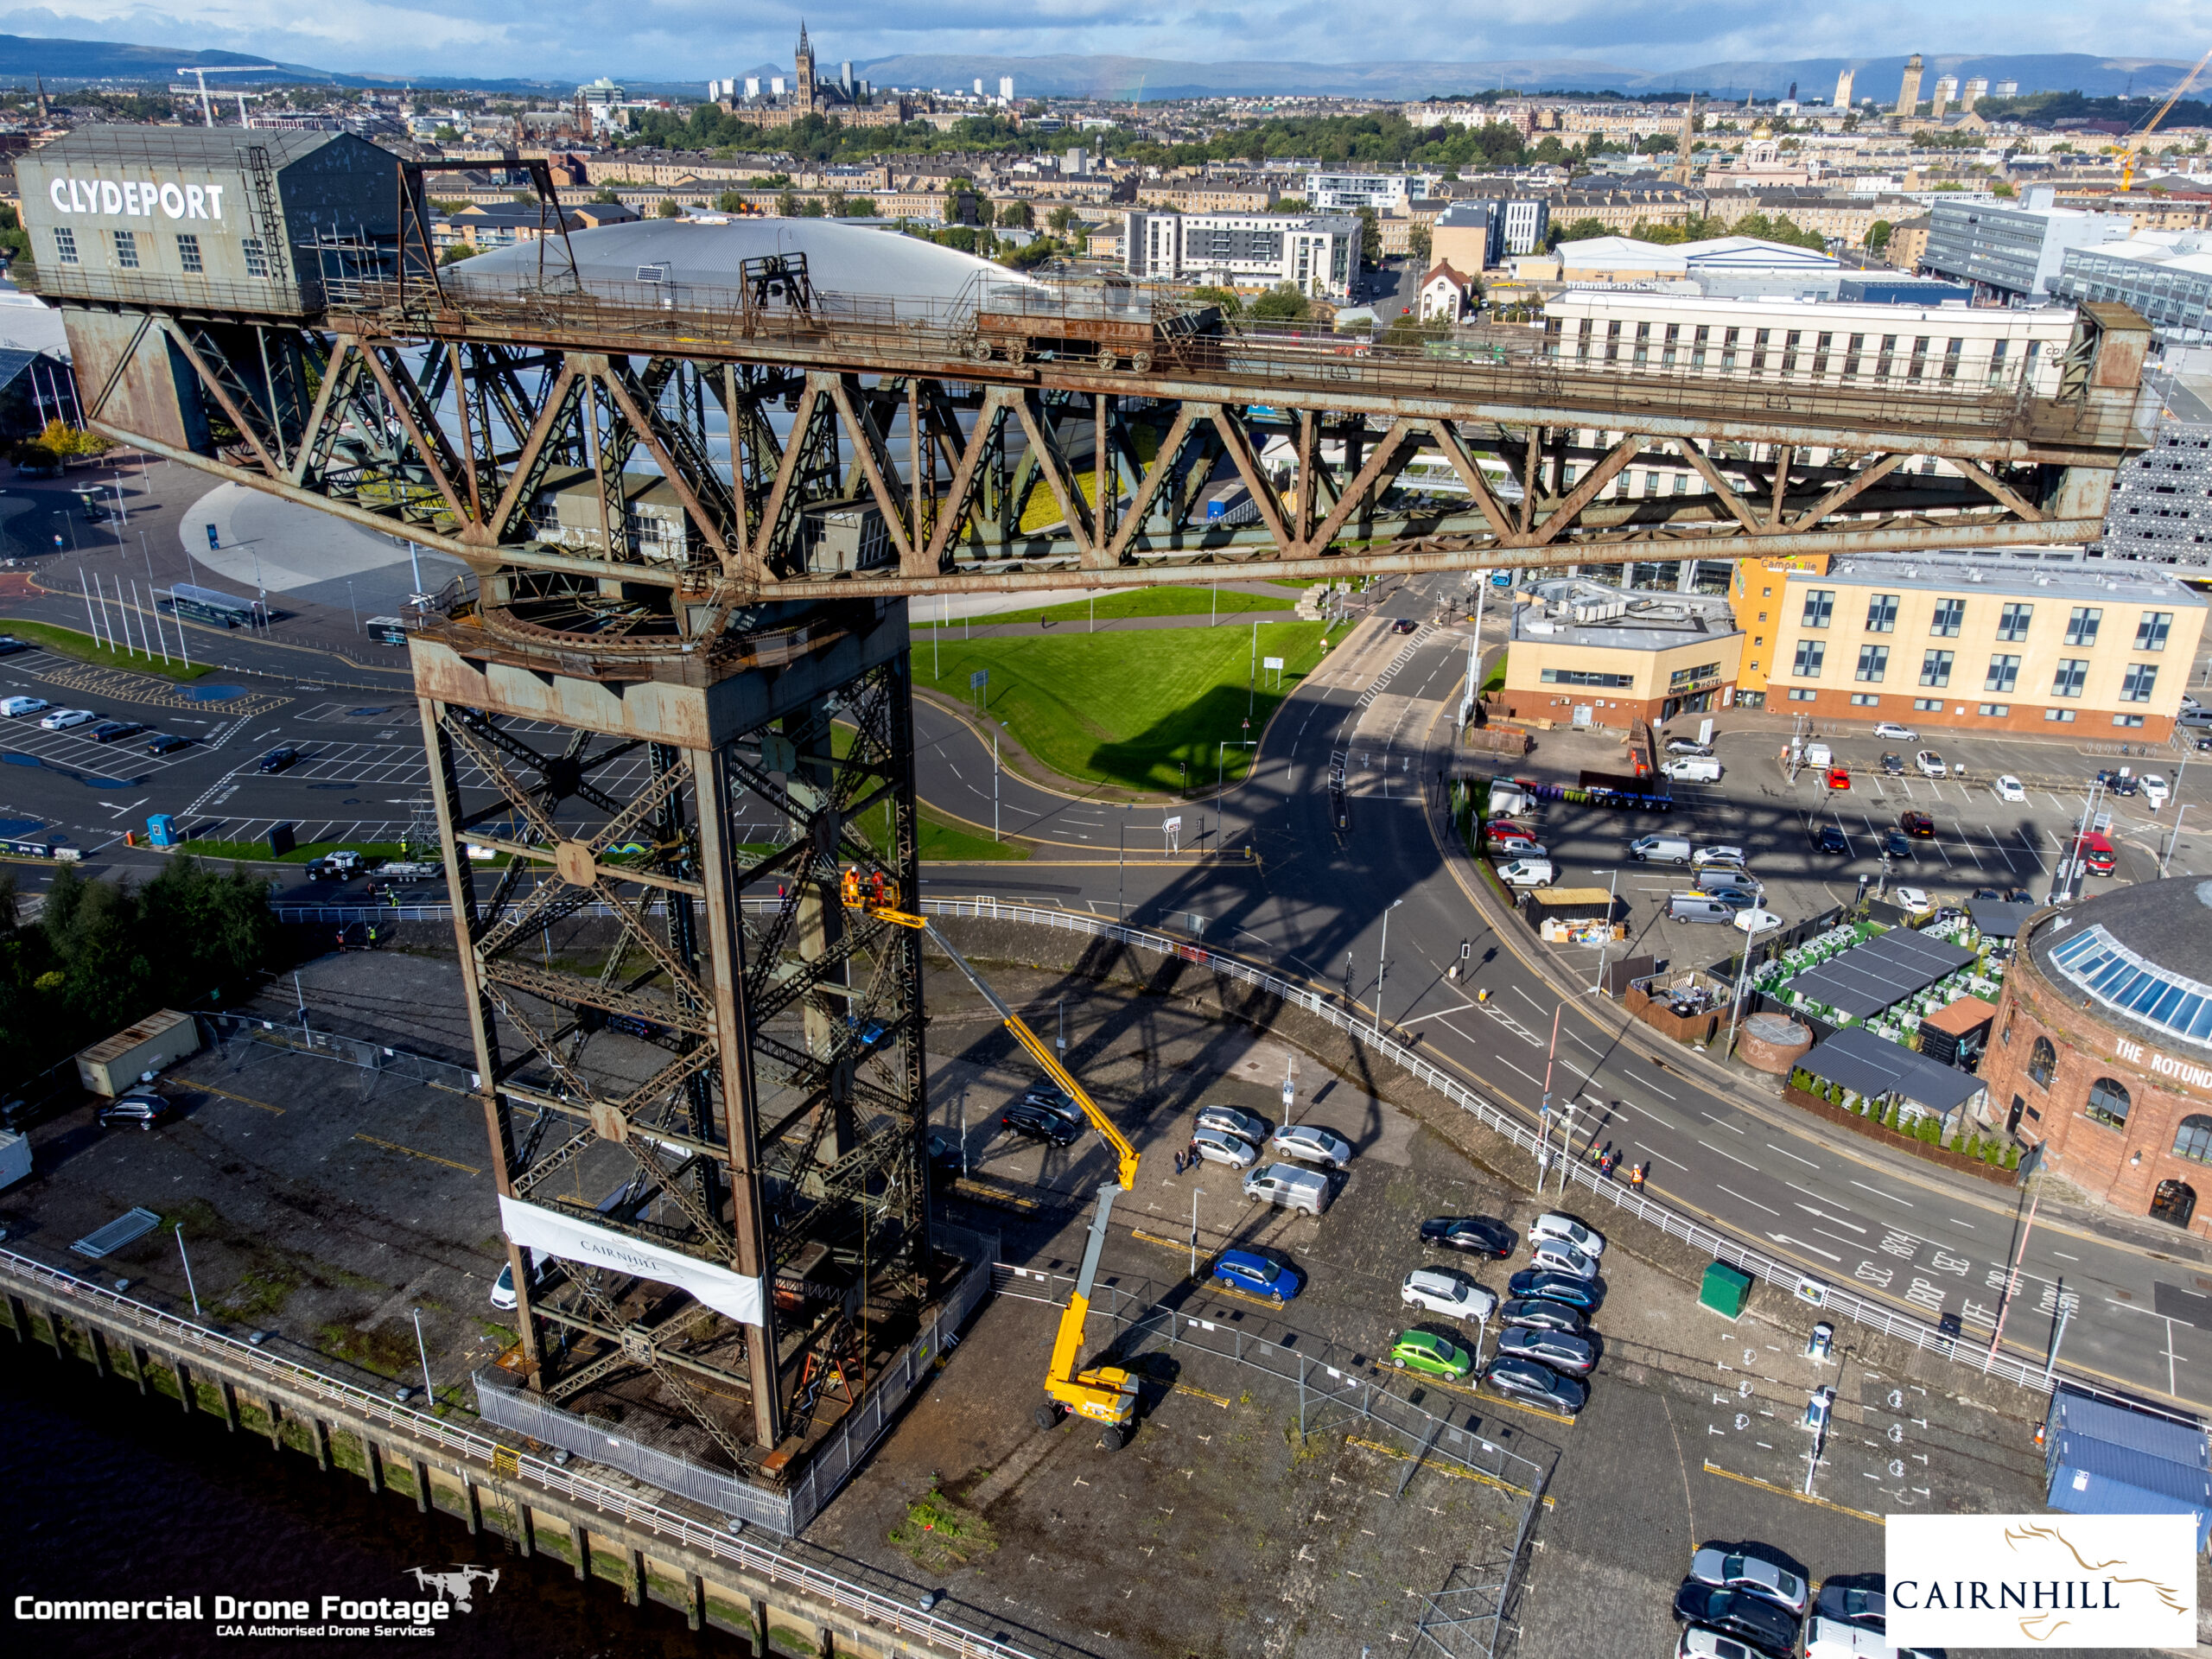 Cairnhill Structures – Finnieston Crane, Glasgow